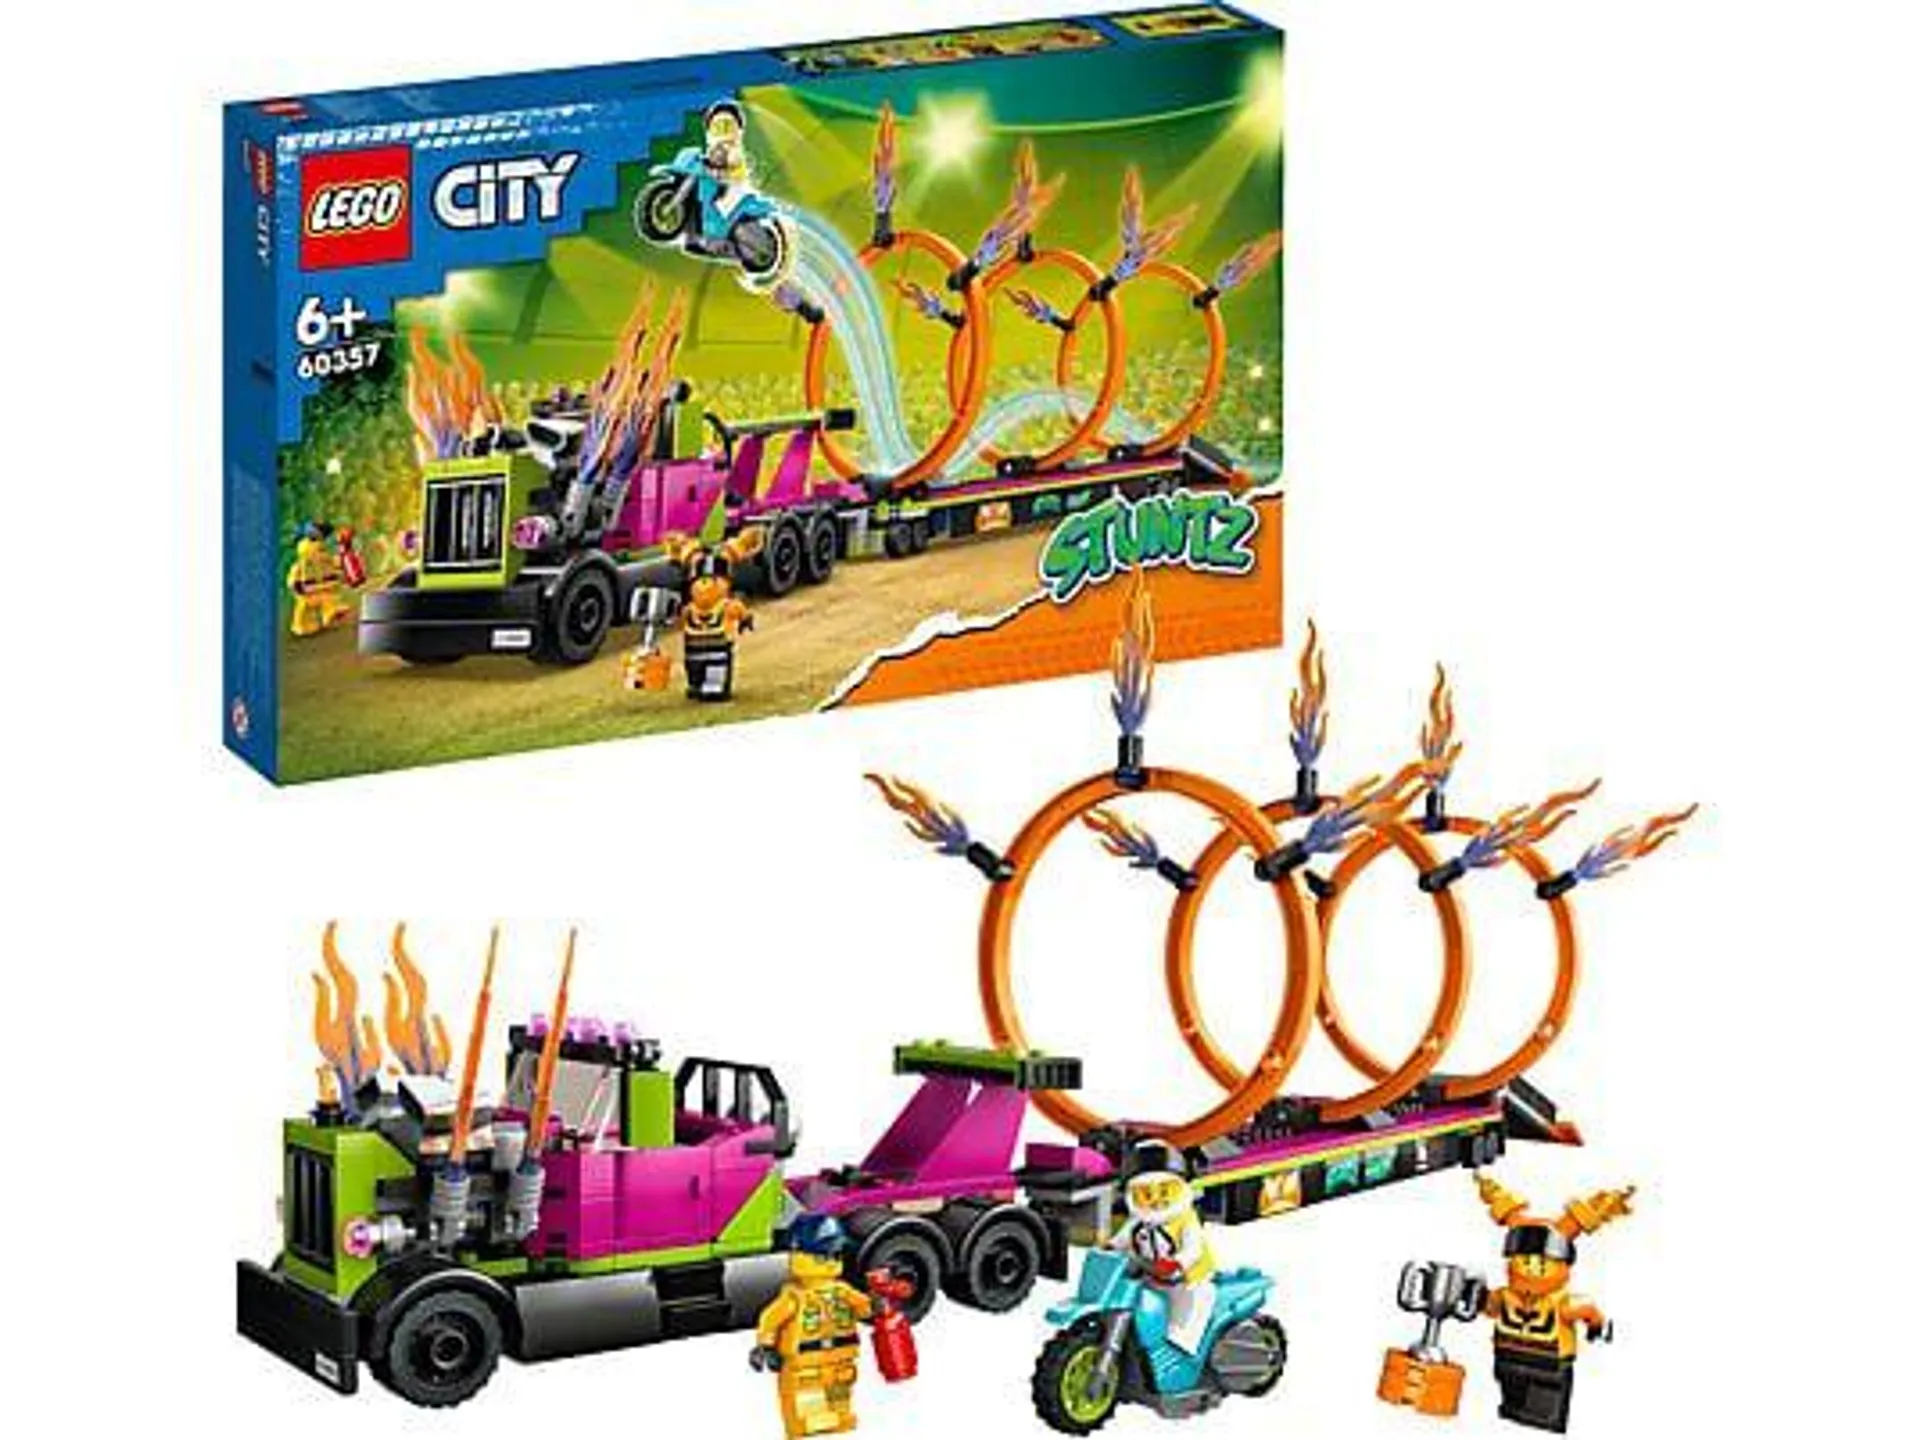 LEGO City Stuntz 60357 Stunttruck mit Feuerreifen-Challenge Bausatz, Mehrfarbig